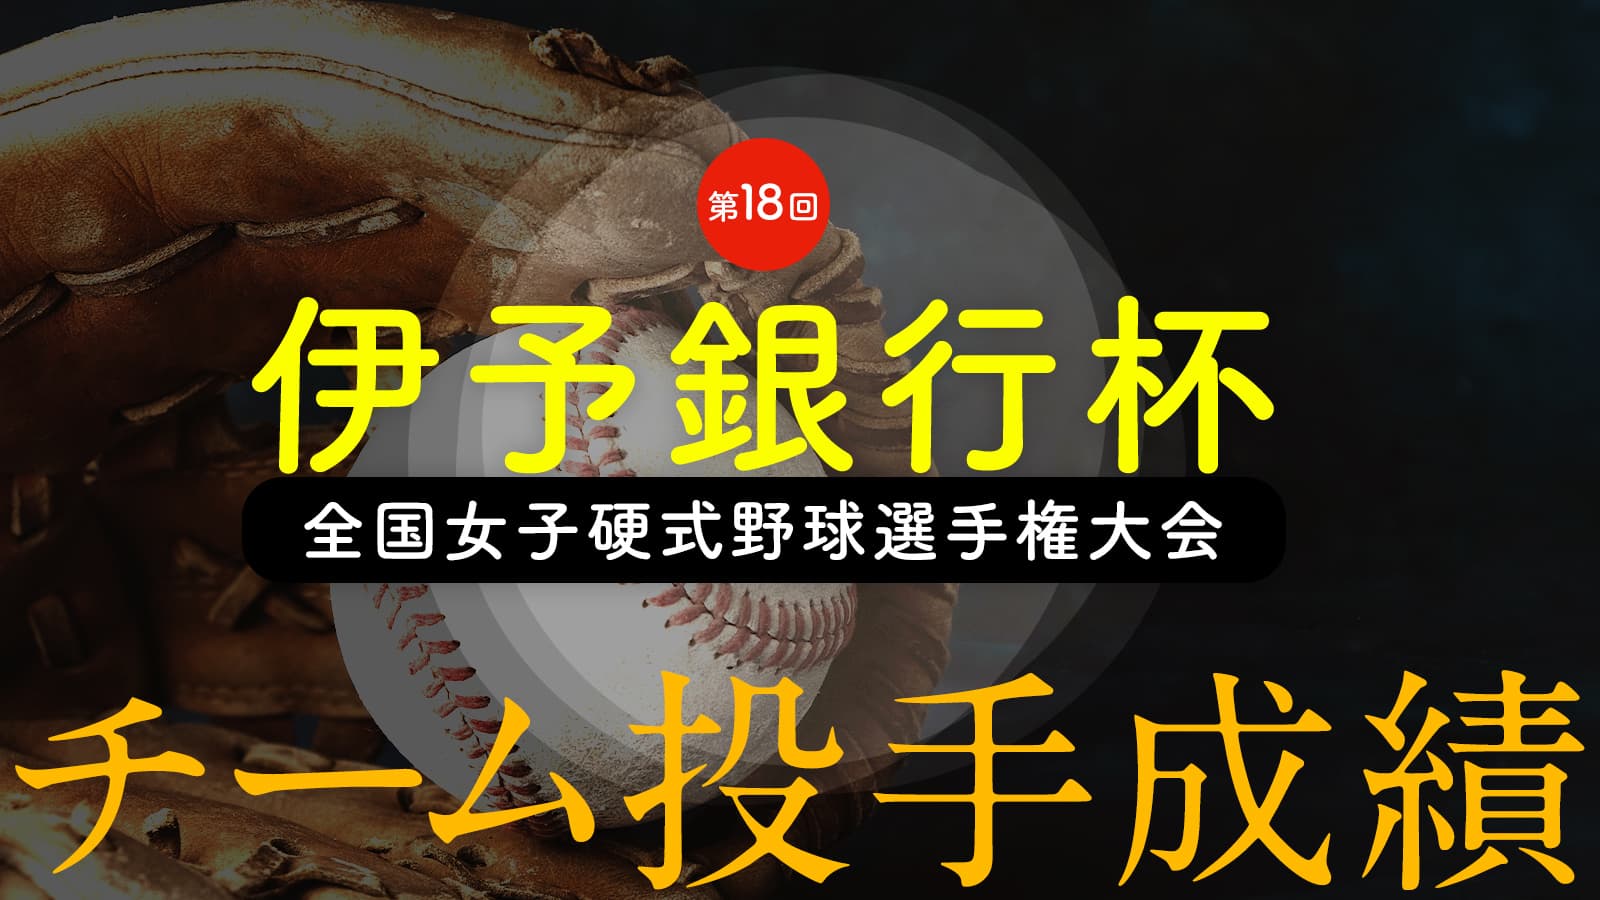 第18回伊予銀行杯全国女子硬式野球選手権大会『チーム投手成績』